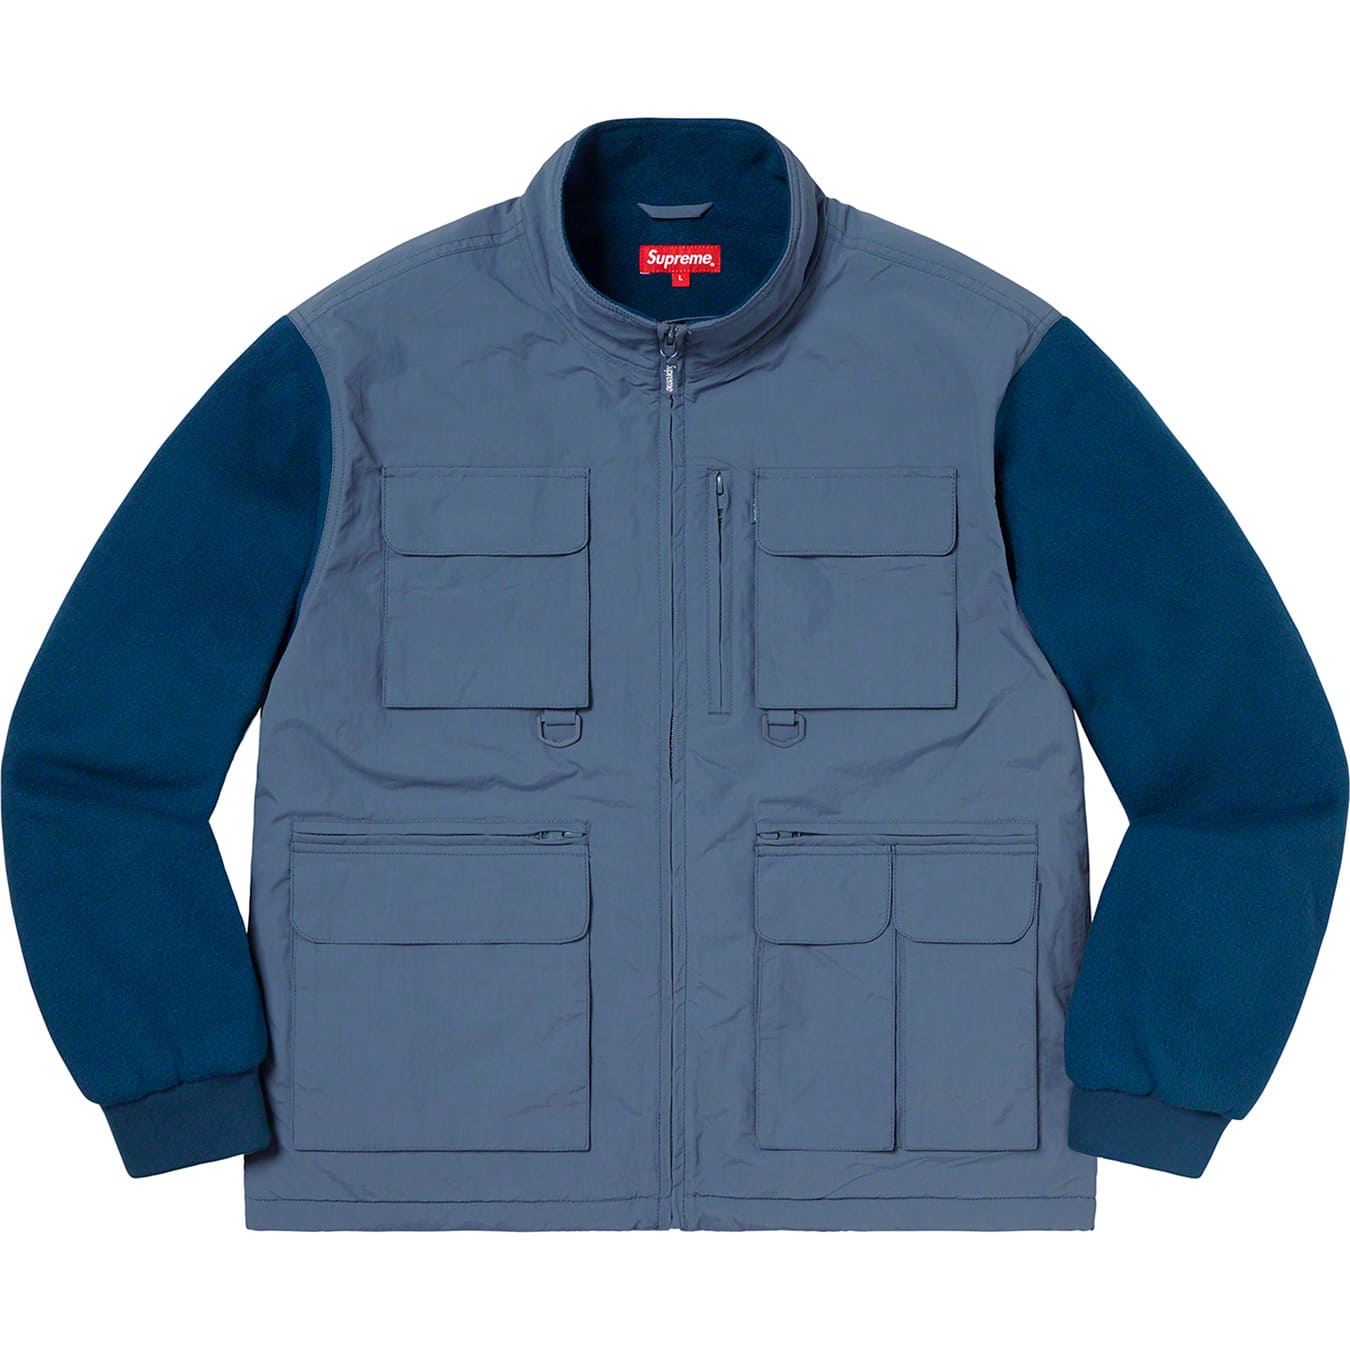 Upland Fleece Jacket | Supreme 19fw